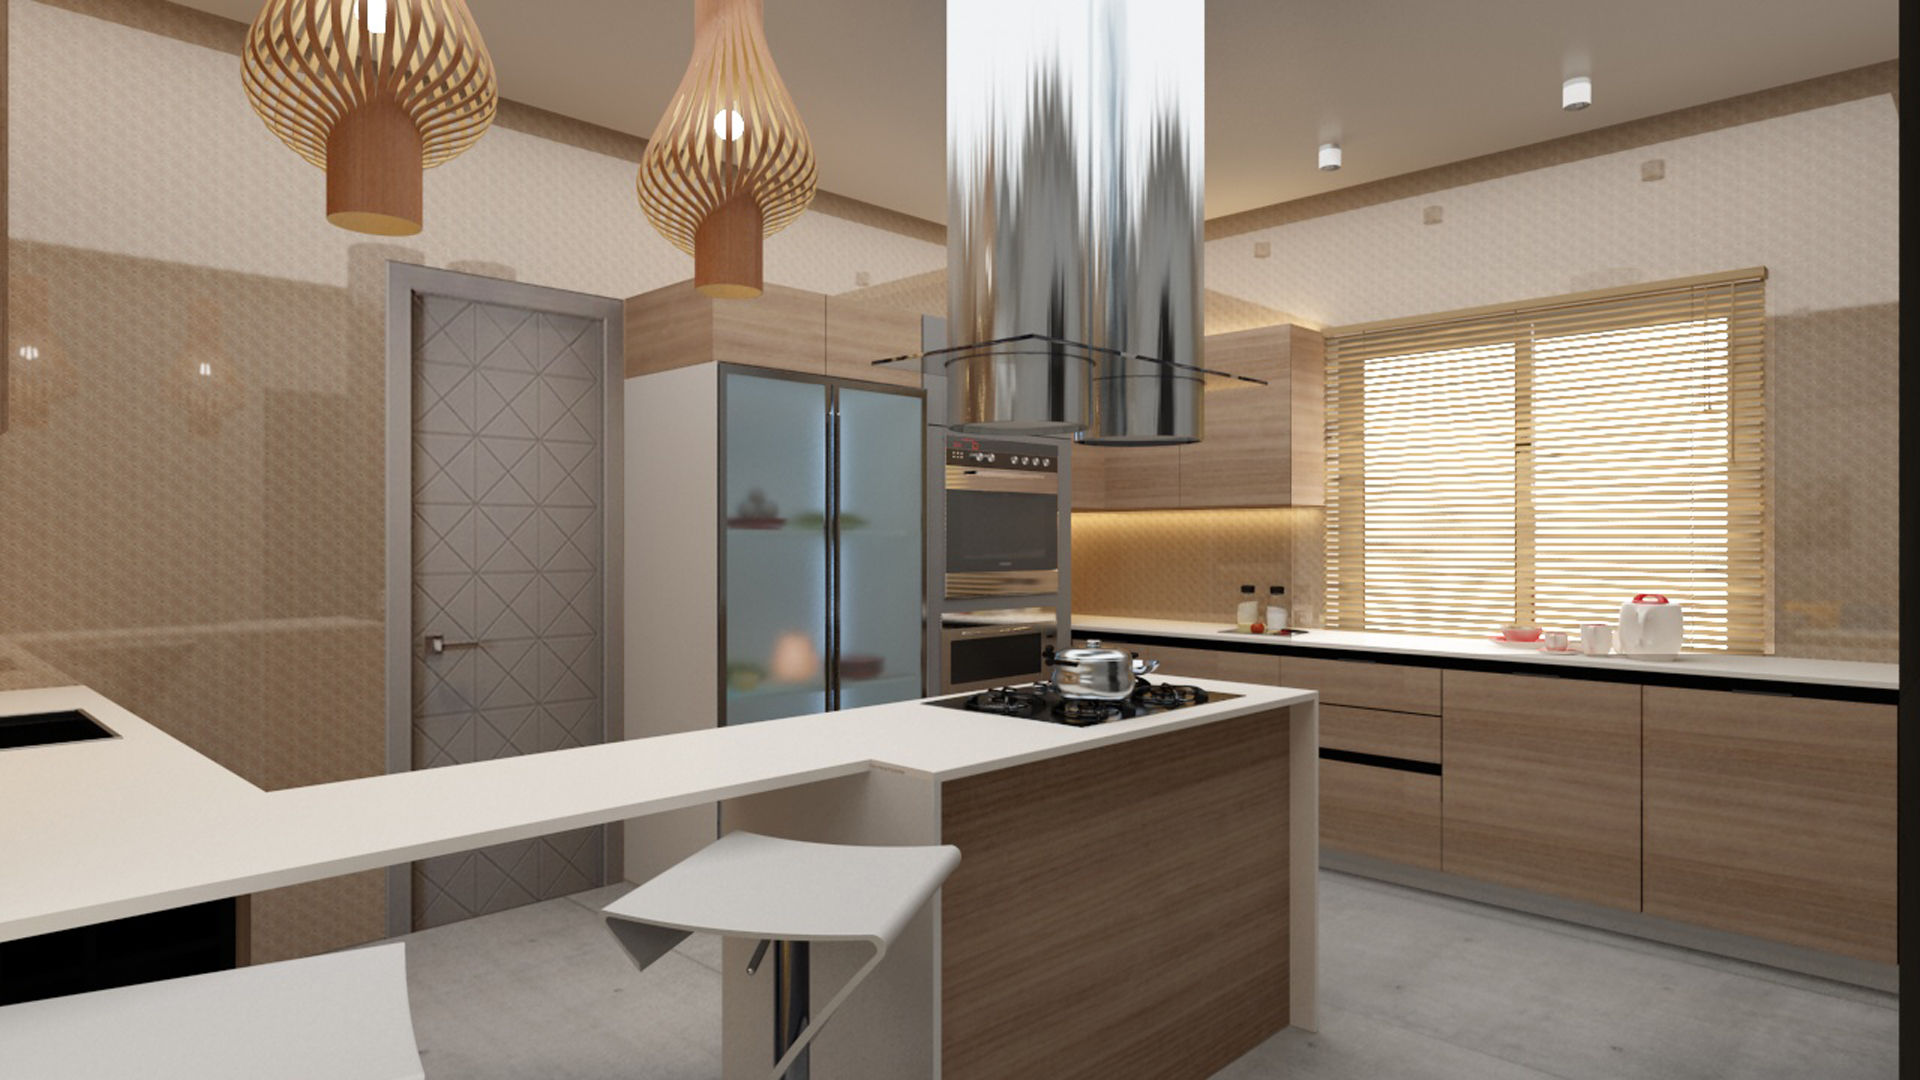 Modern kitchen design in shades of beige and brown Rhythm And Emphasis Design Studio Modern kitchen